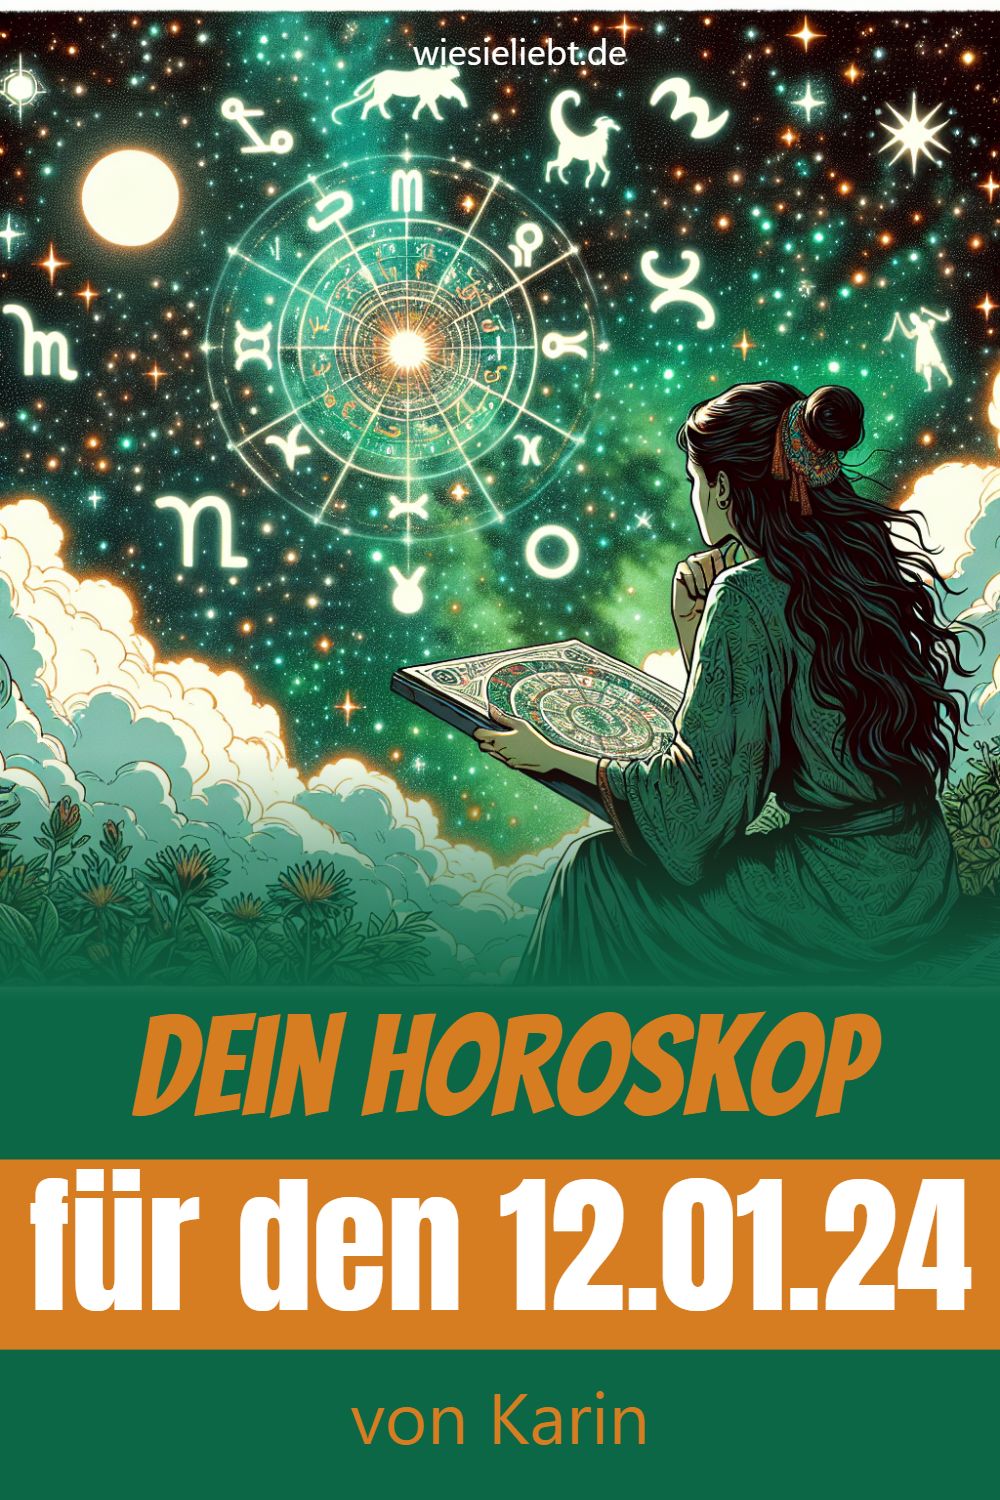 Dein Horoskop für den 12.01.24 von Karin